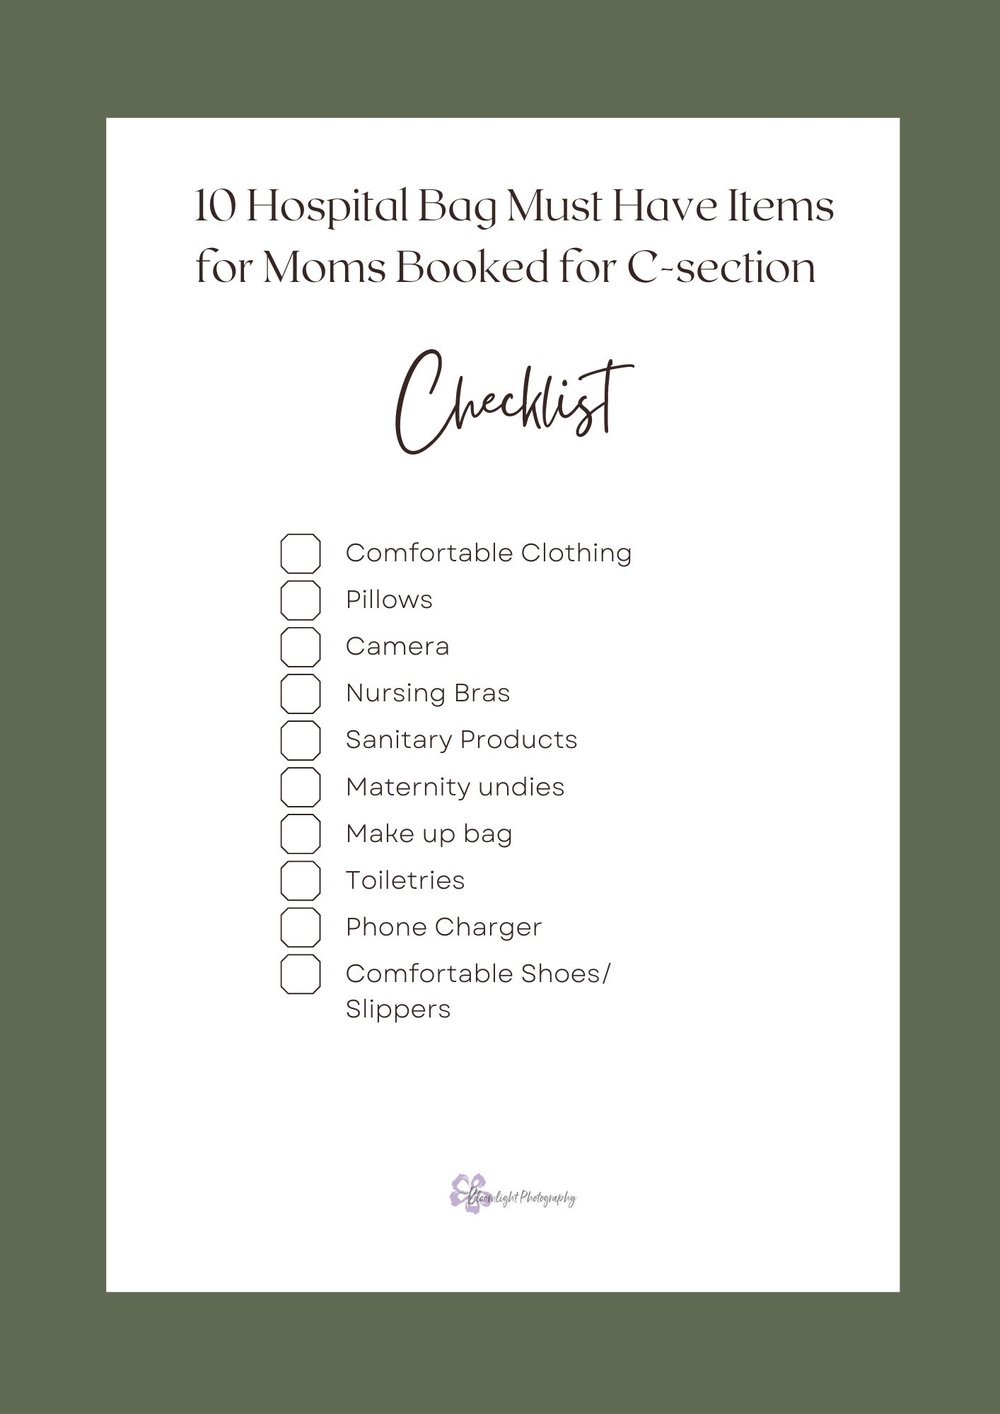 Hospital Bag checklist for C-section moms